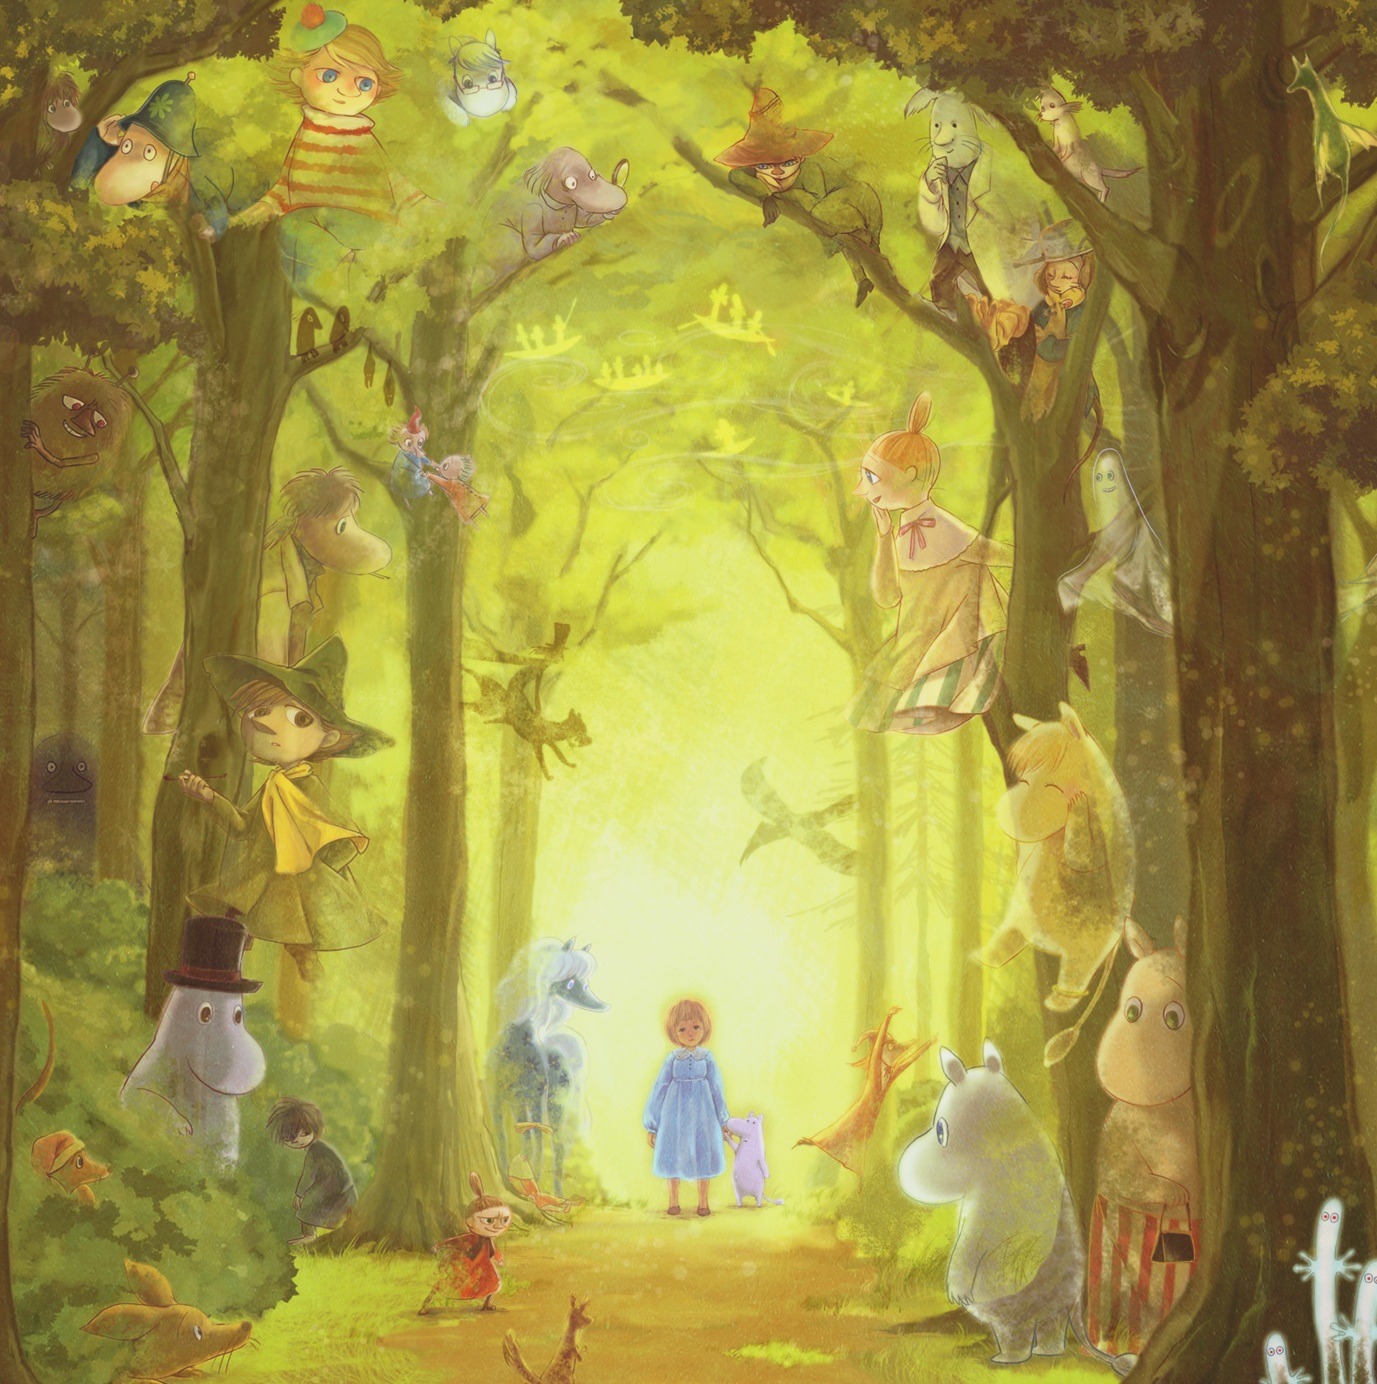 Фото Девочка стоит в лесу в окружение сказочных персонажей, art by sumio